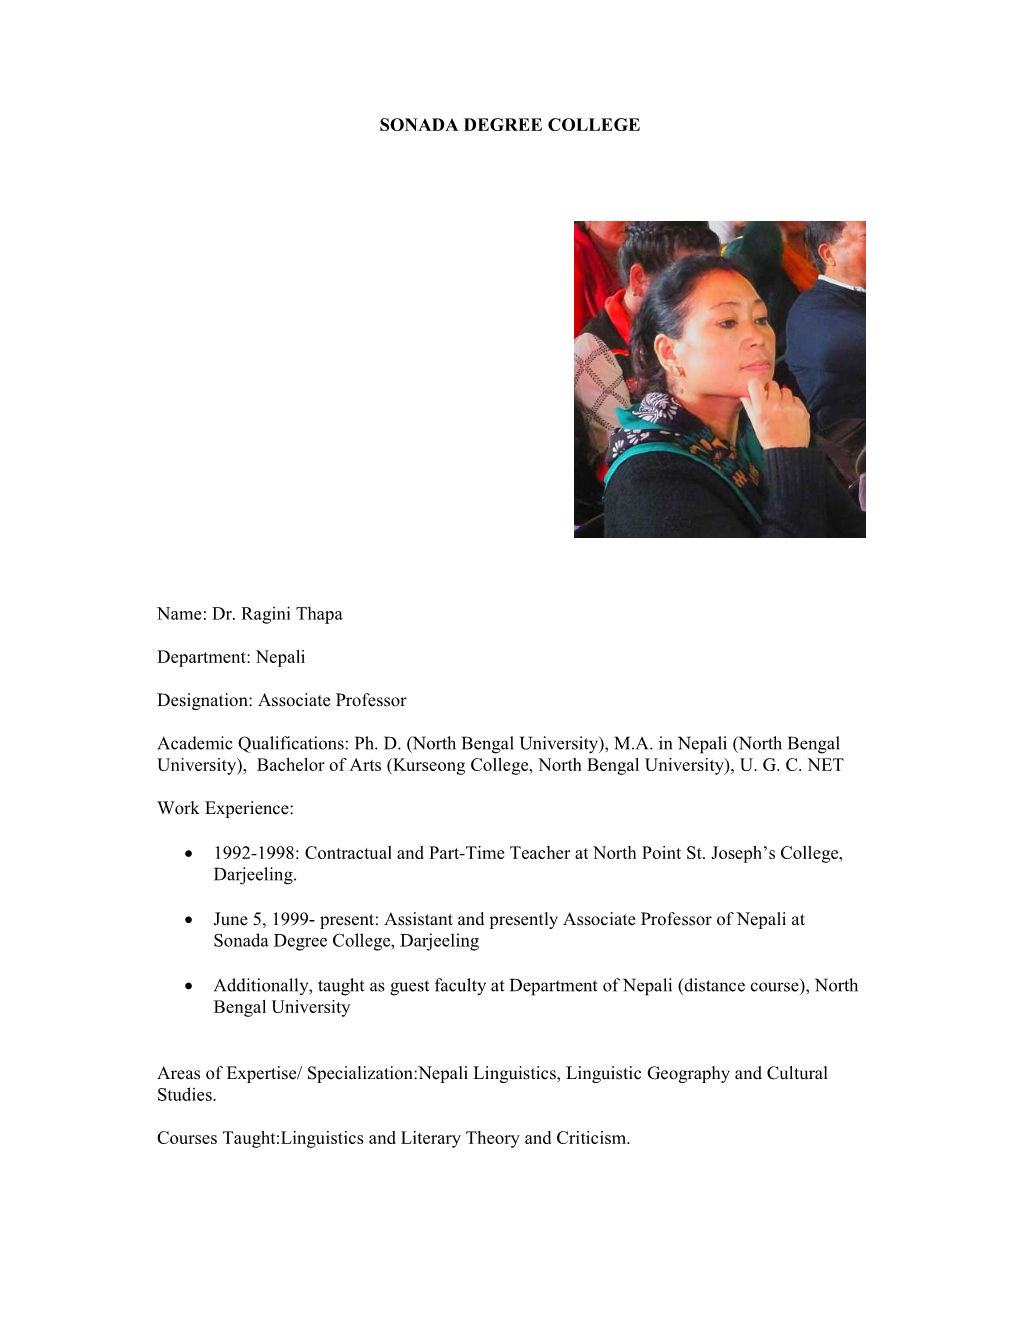 Dr. Ragini Thapa Department: Nepali Designation: Associate Professor